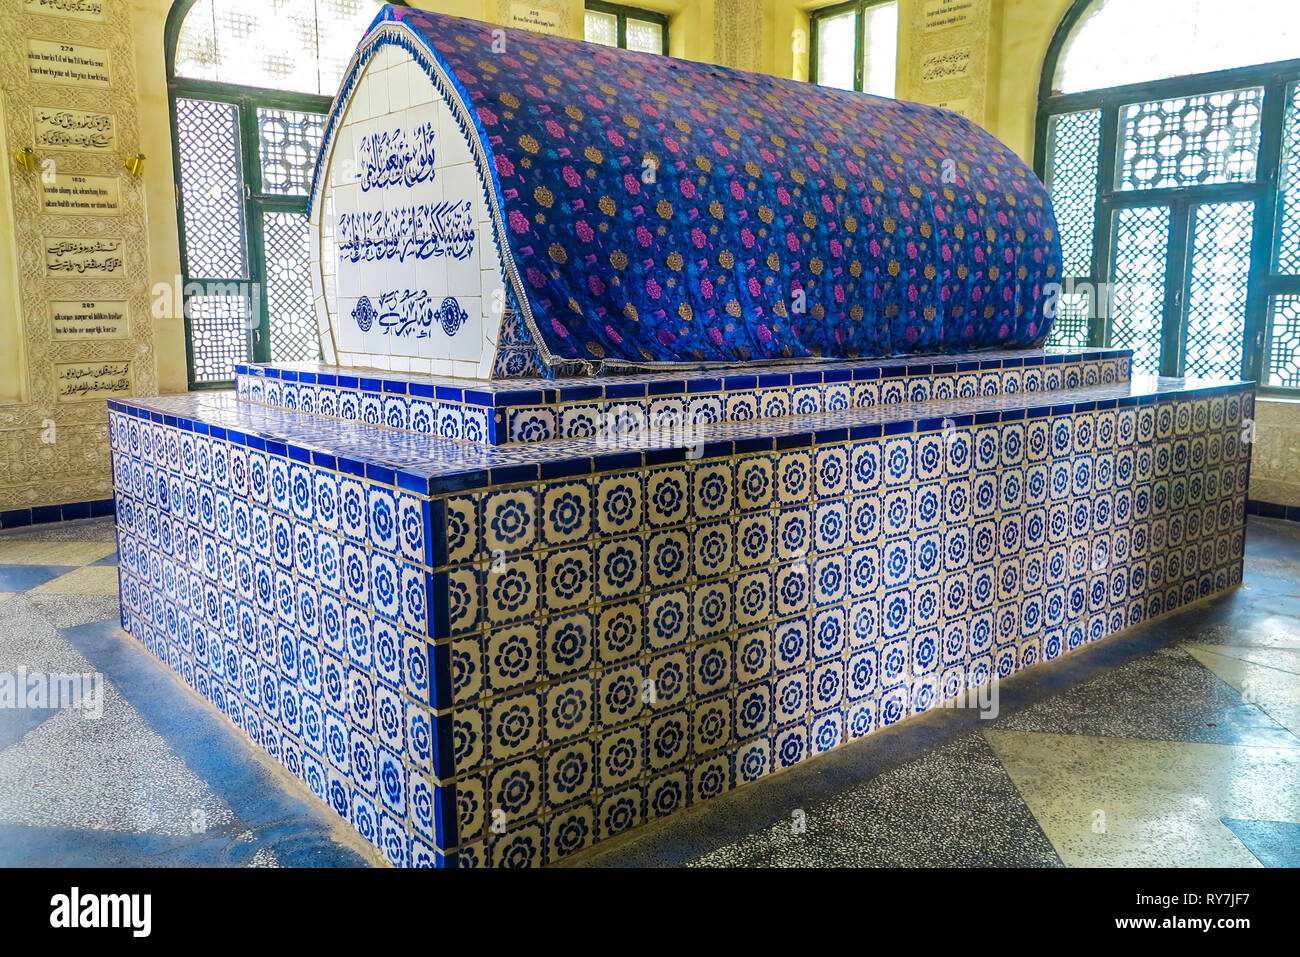 Kashgar Hajib Yusuf Khass Balasaguni Tomb Coffin with Uyghur Arab Letters Stock Photo